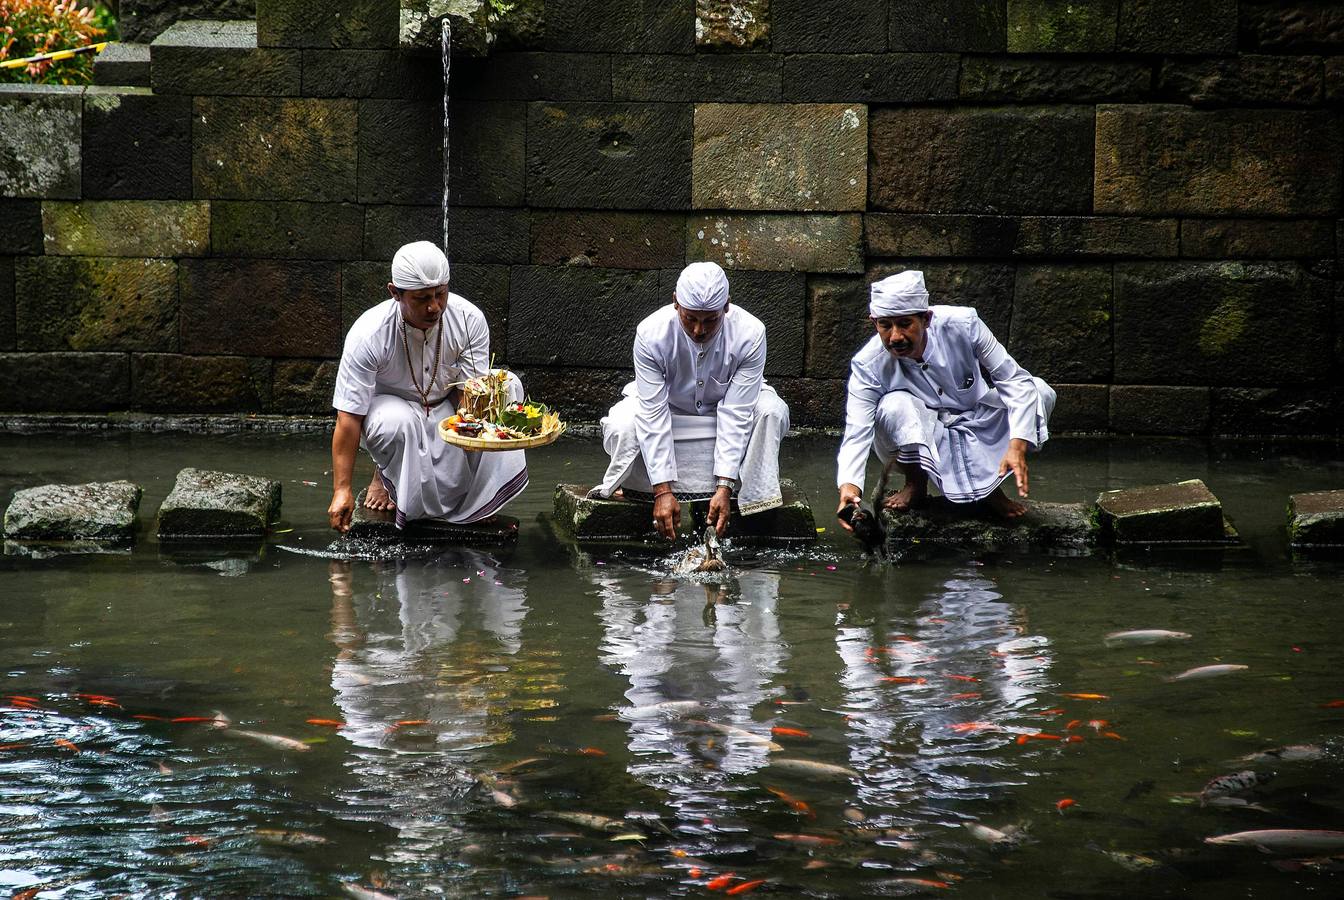 Hindúes indonesios celebran la ceremonia del Melasti, un festival de purificación que da paso al Nyepi (Día del Silencio)